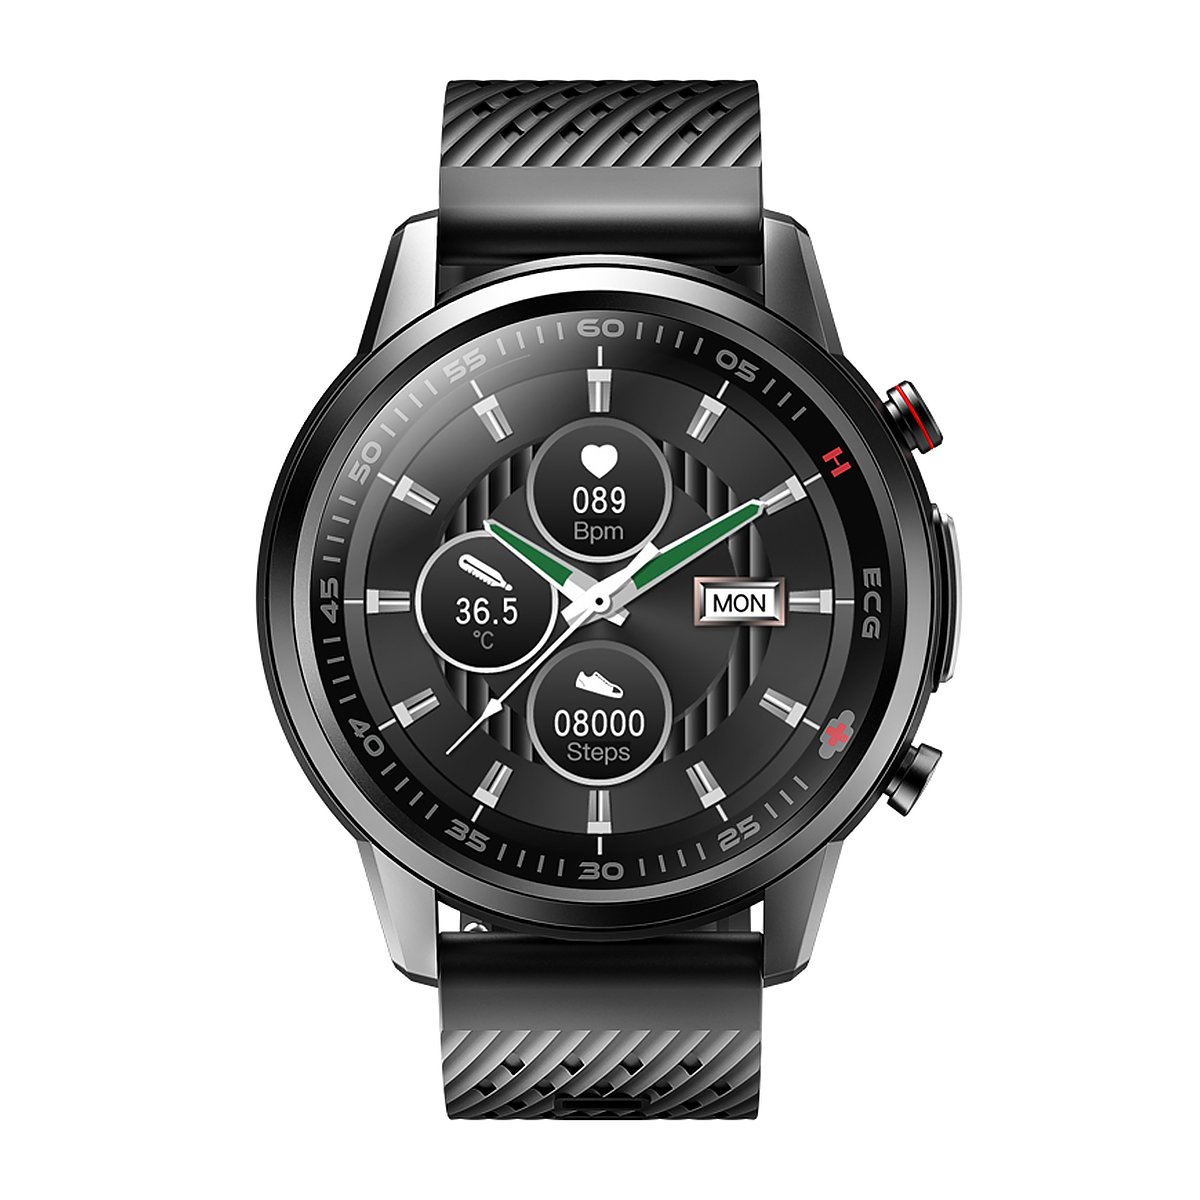 Zdjęcia - Smartwatche Watchmark Smartwatch, , Kardiowatch WF800, czarny 